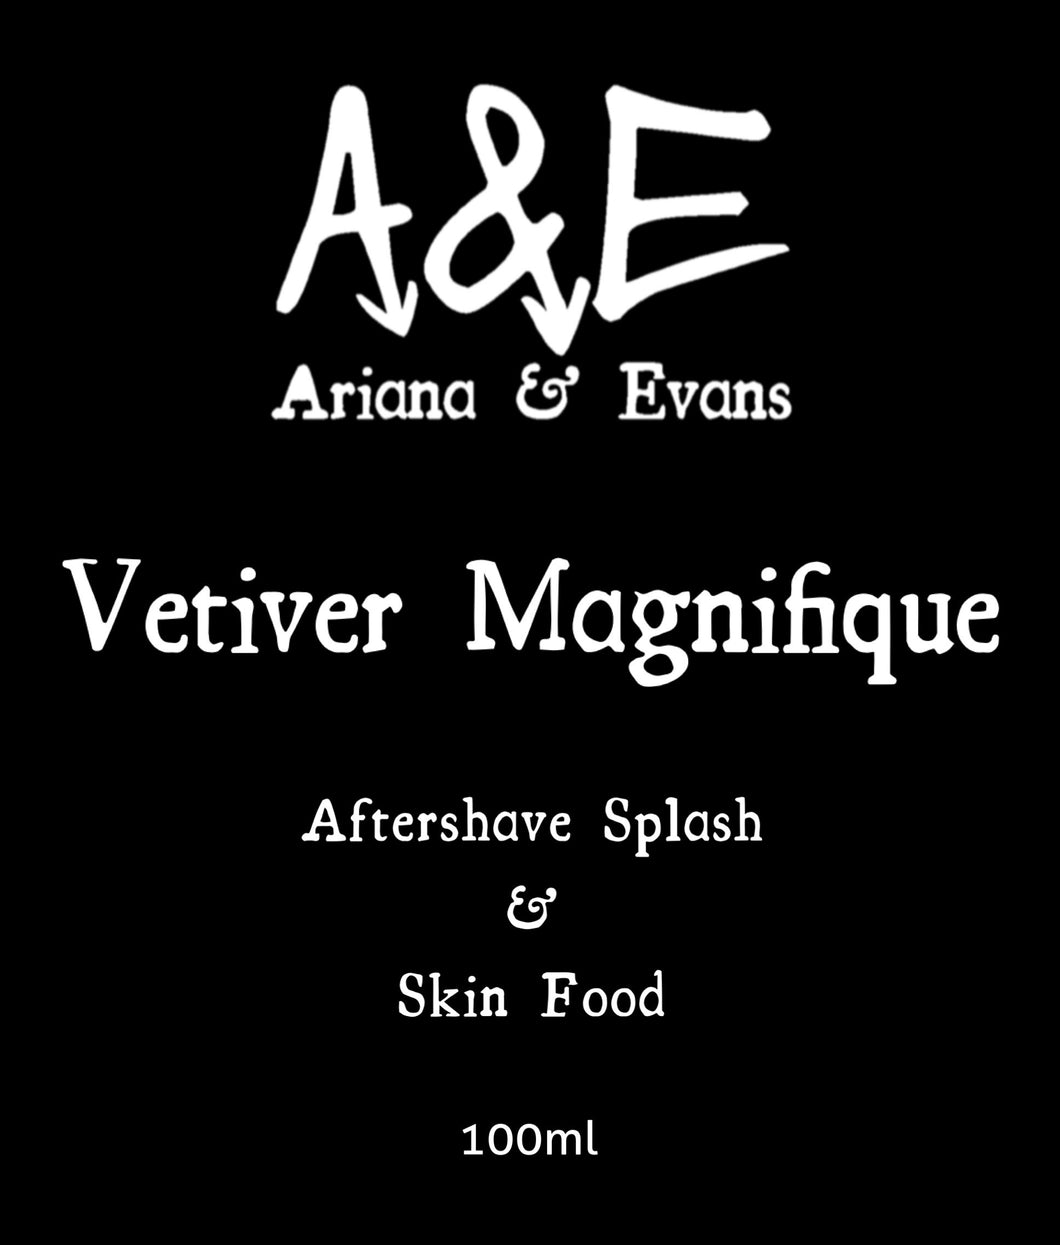 Vetiver Magnifique Aftershave Splash & Skin Food